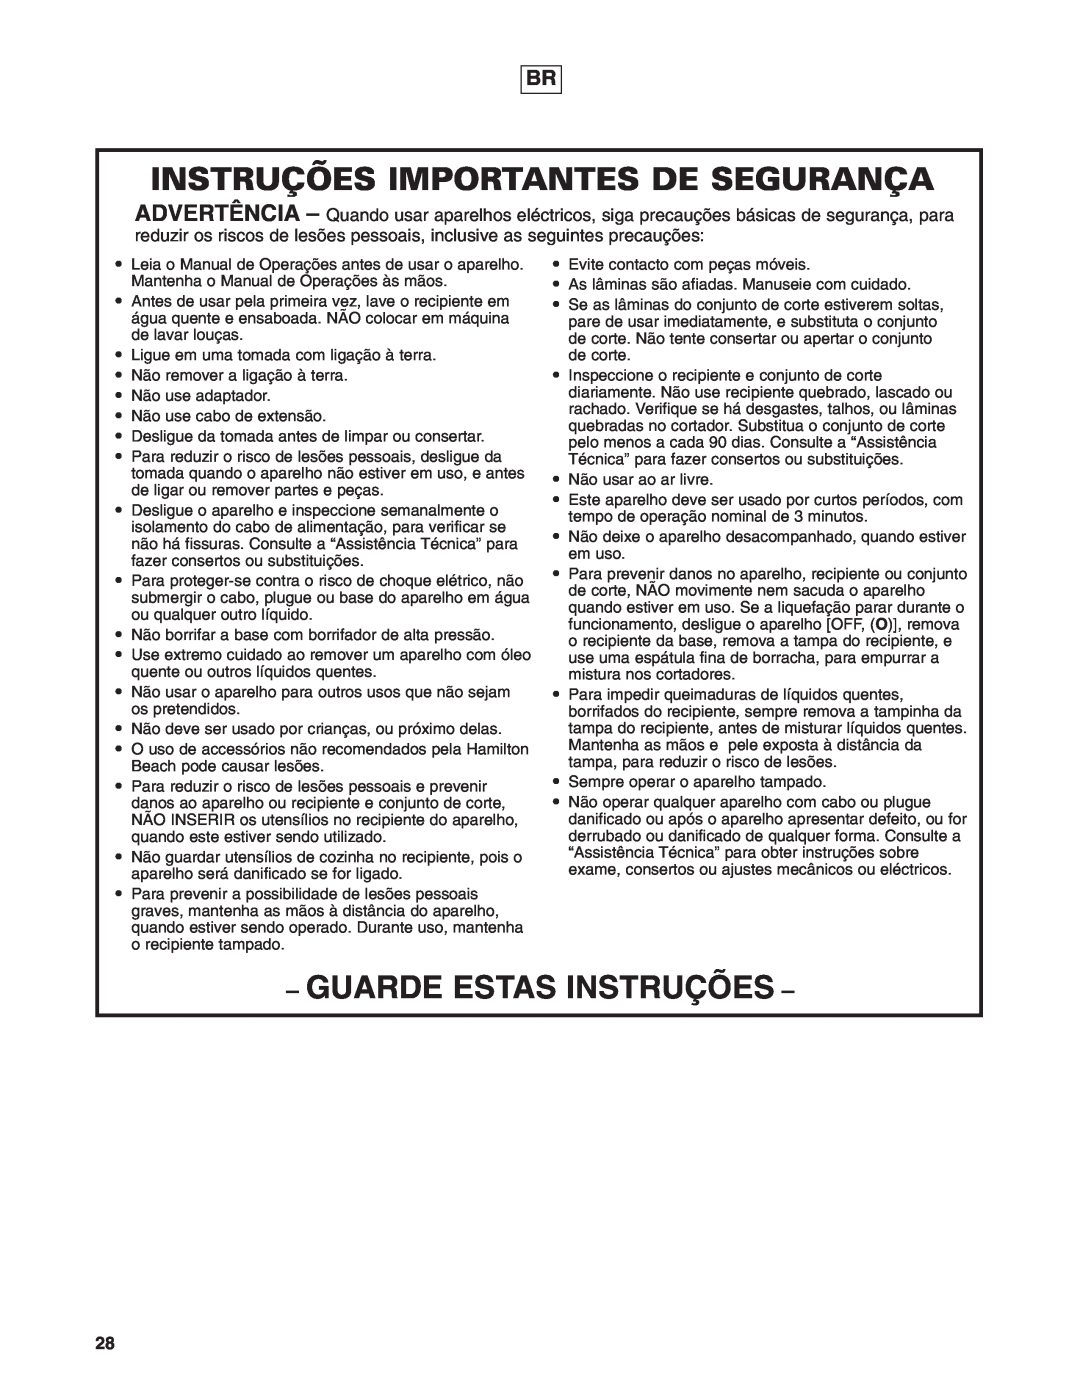 Hamilton Beach 908 Series operation manual Instruções Importantes De Segurança, Guarde Estas Instruções 